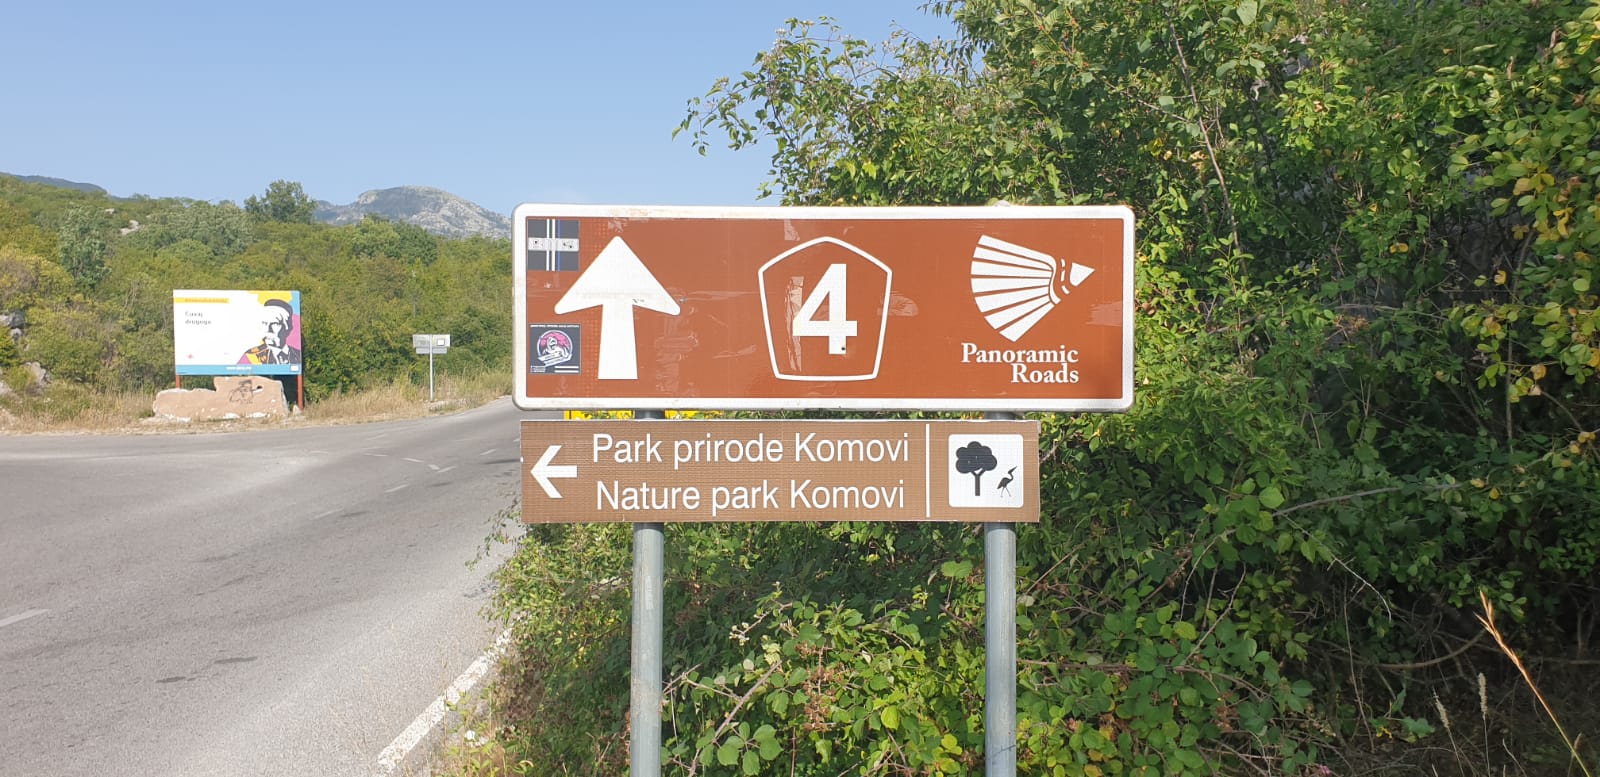 Postavljena saobraćajna signalizacija i info table za Park prirode Komovi